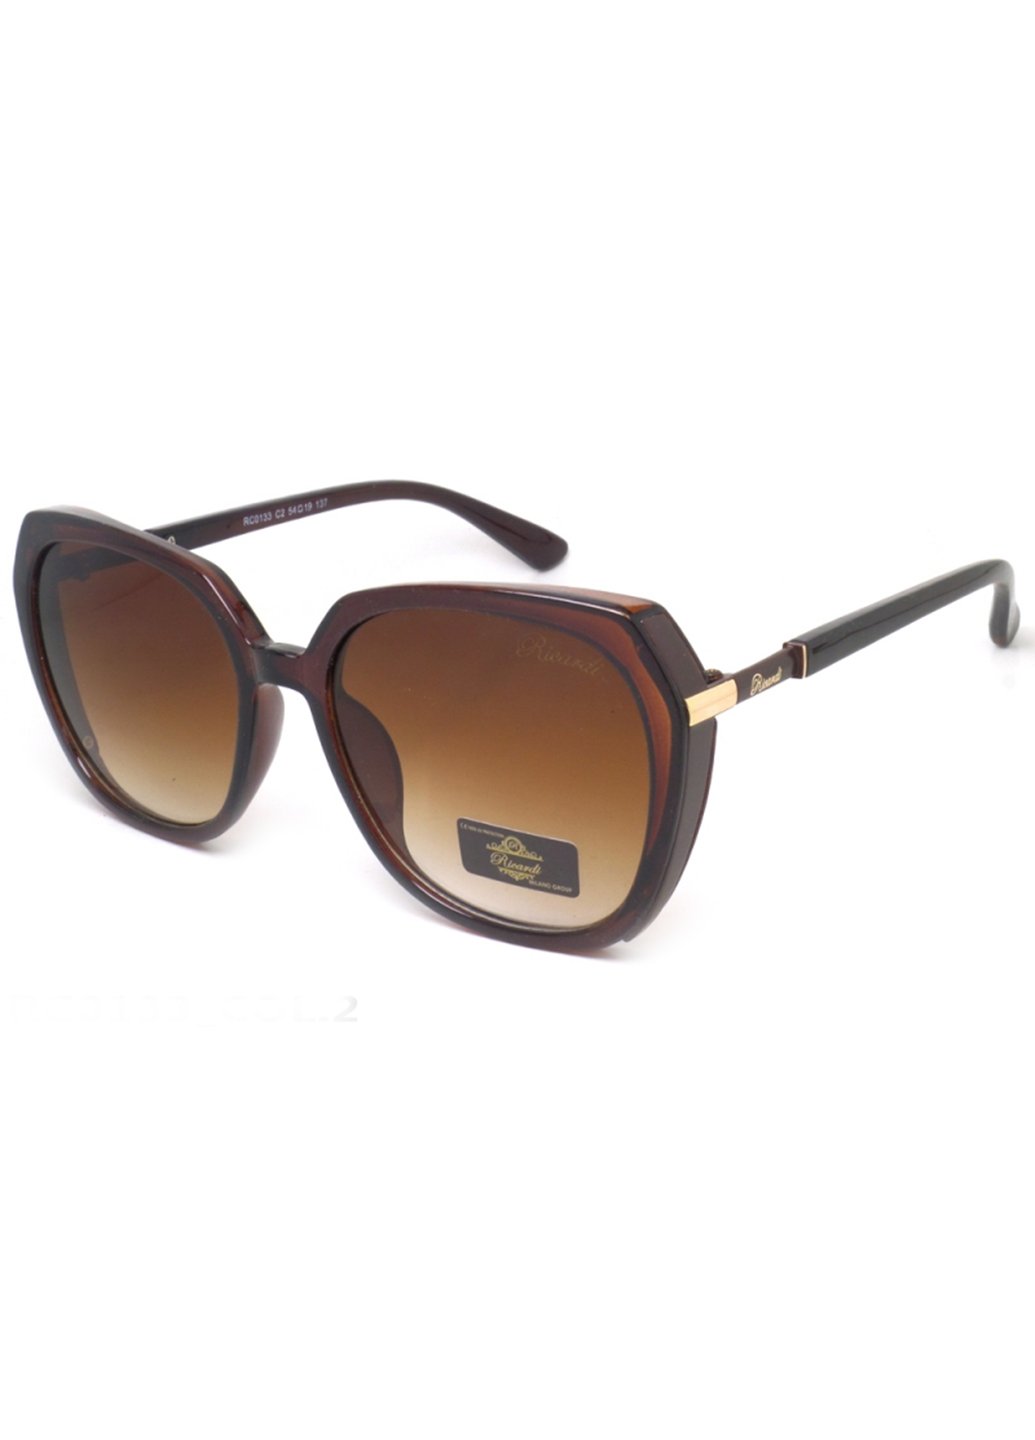 Купить Женские солнцезащитные очки Ricardi RC0133 110018 - Коричневый в интернет-магазине